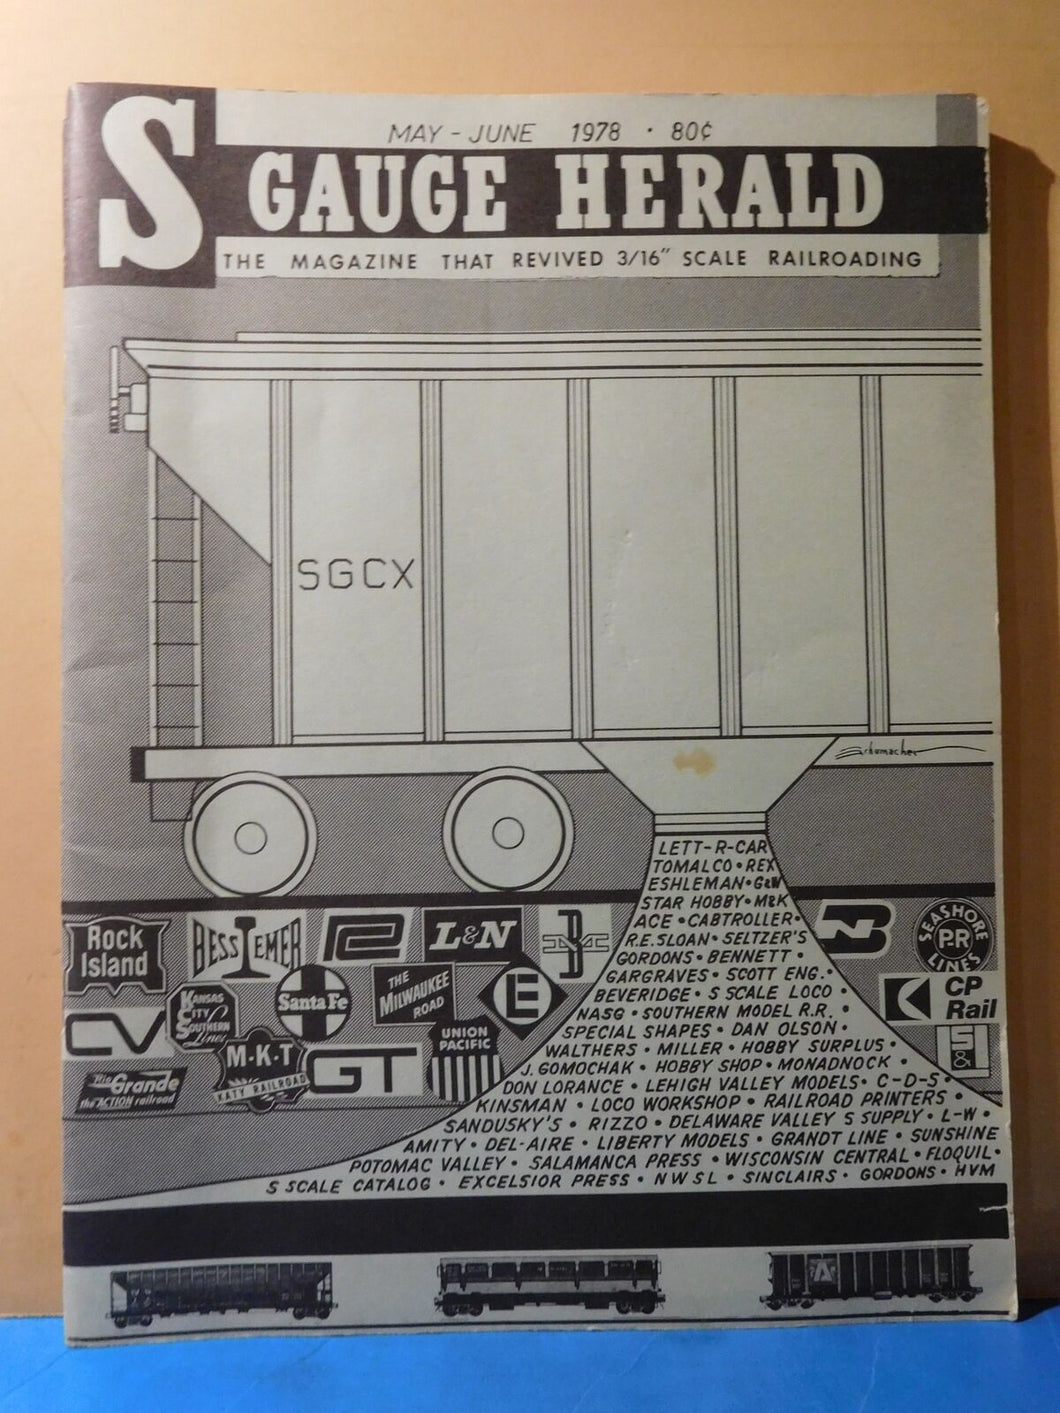 S Gauge Herald 1978 May June SGCX